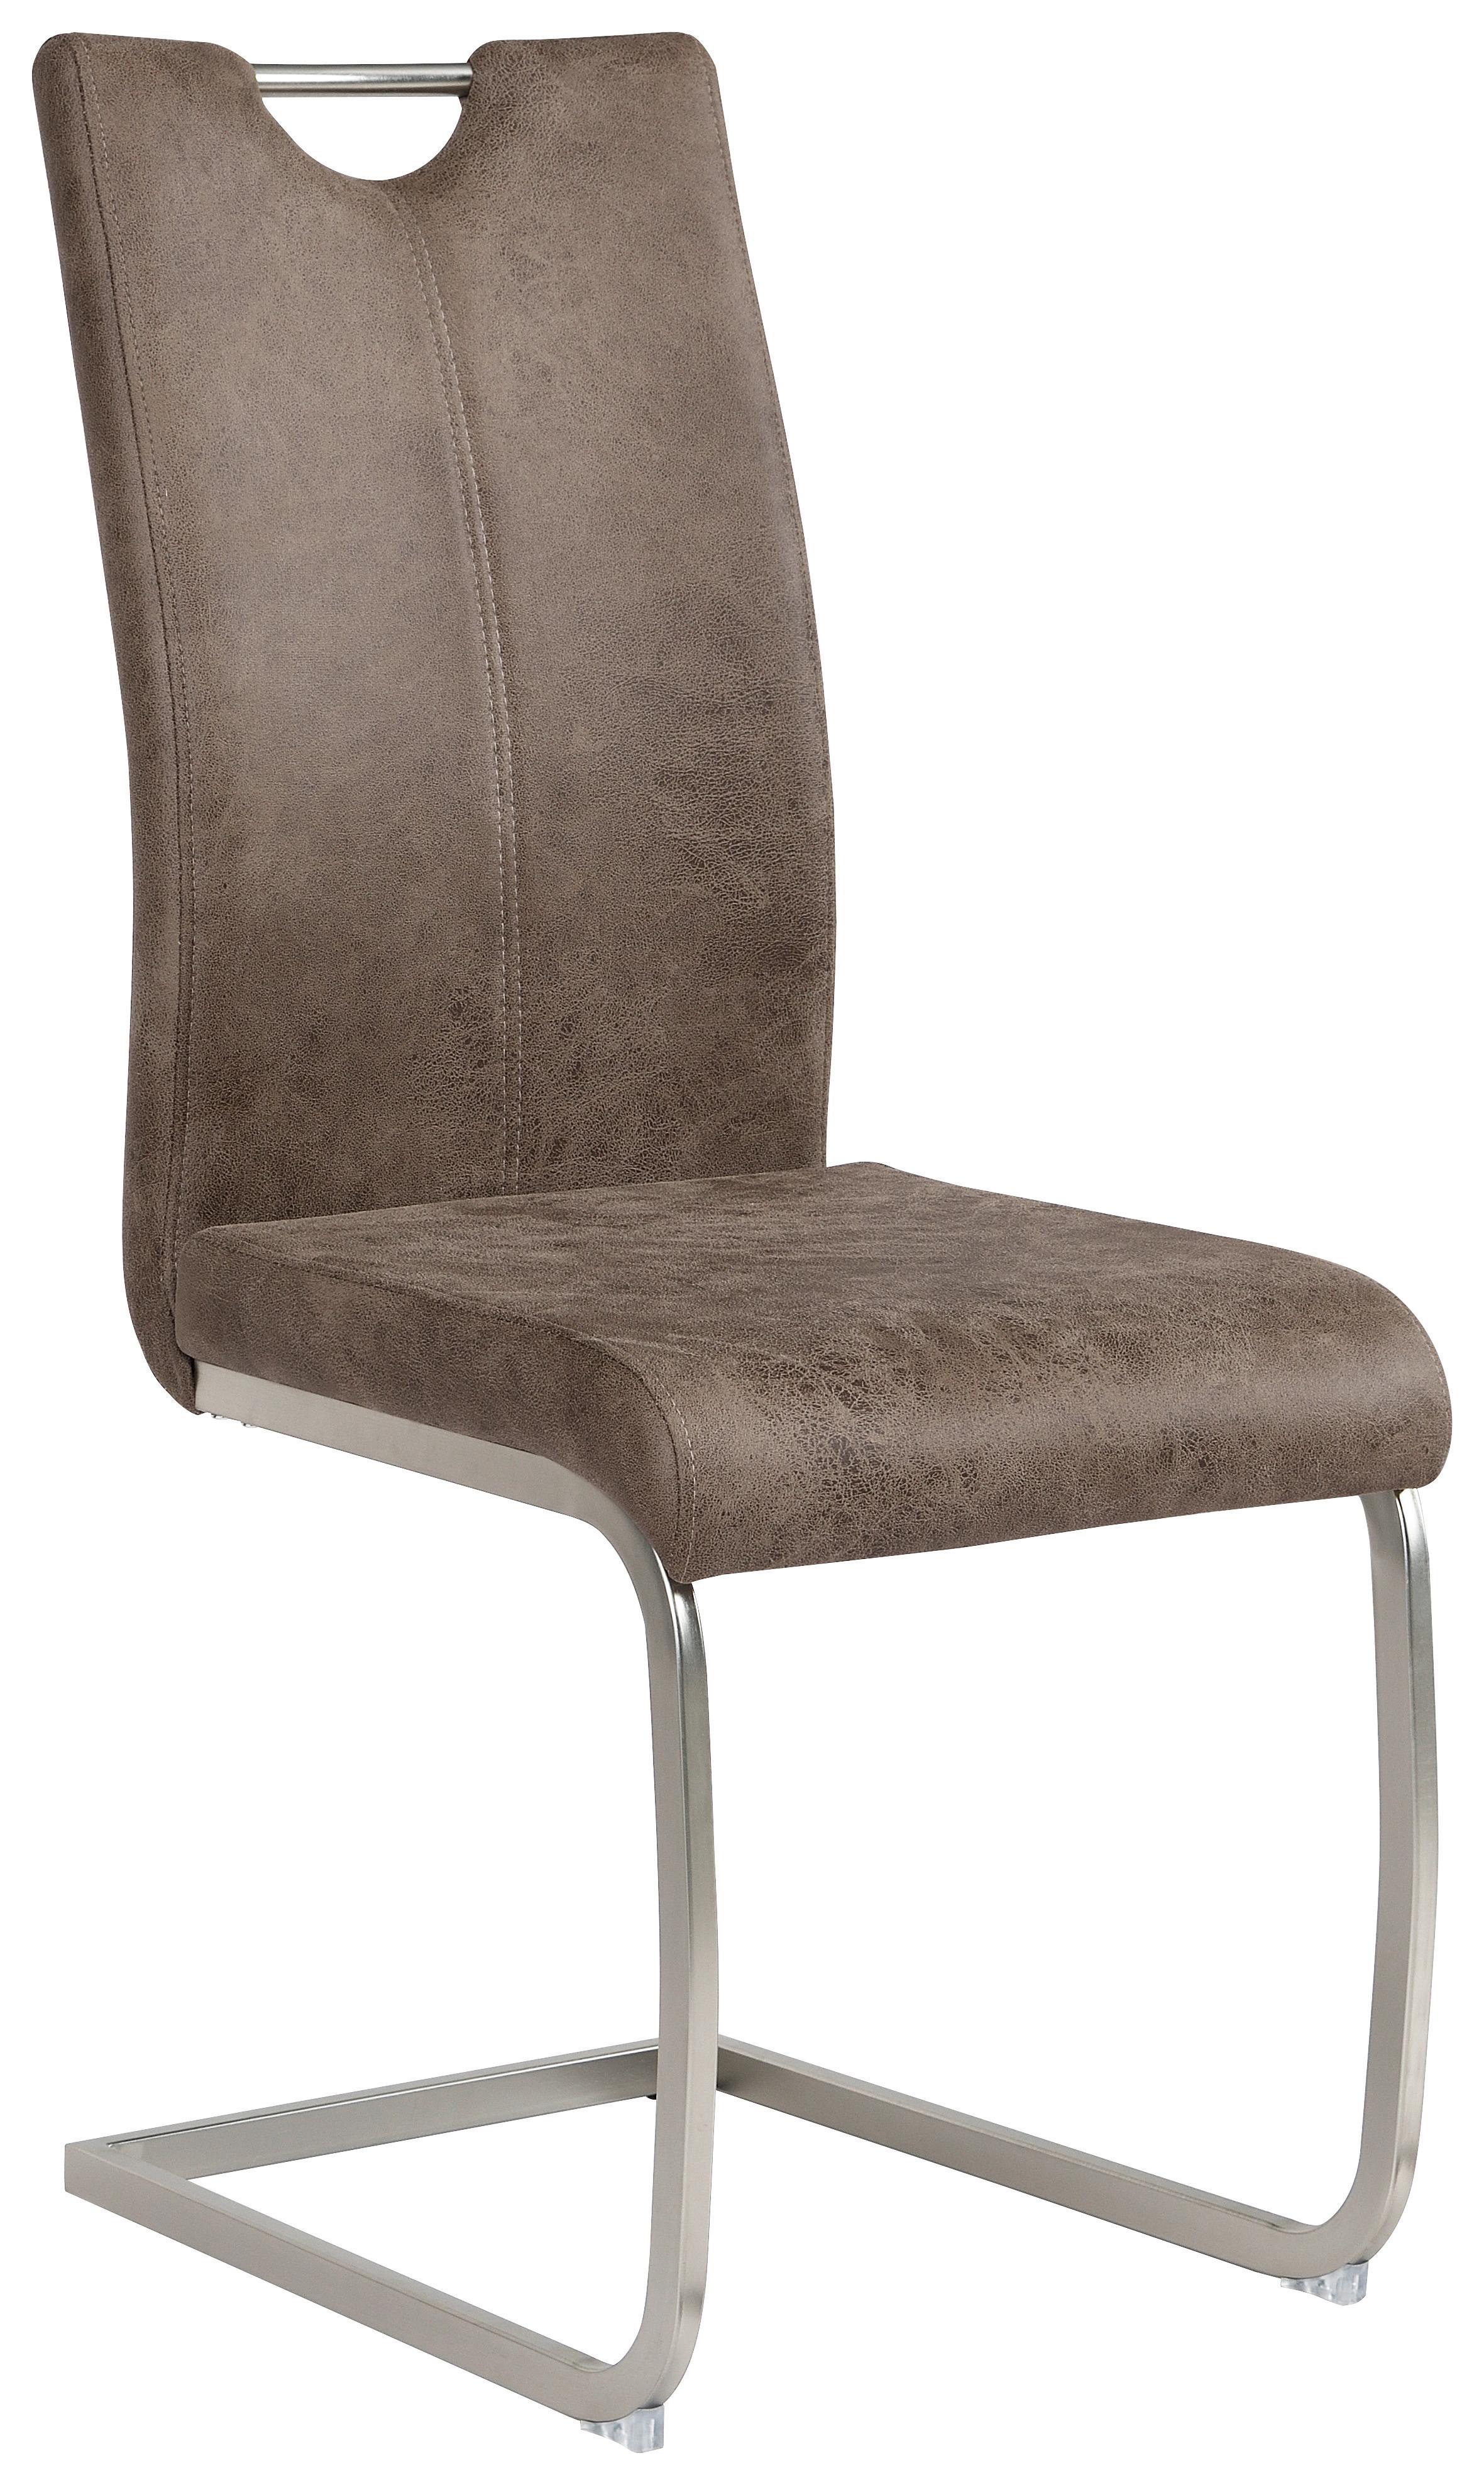 Houpací Židle Aurora - šedá/barvy niklu, Konvenční, kov/textil (43/100/59cm)